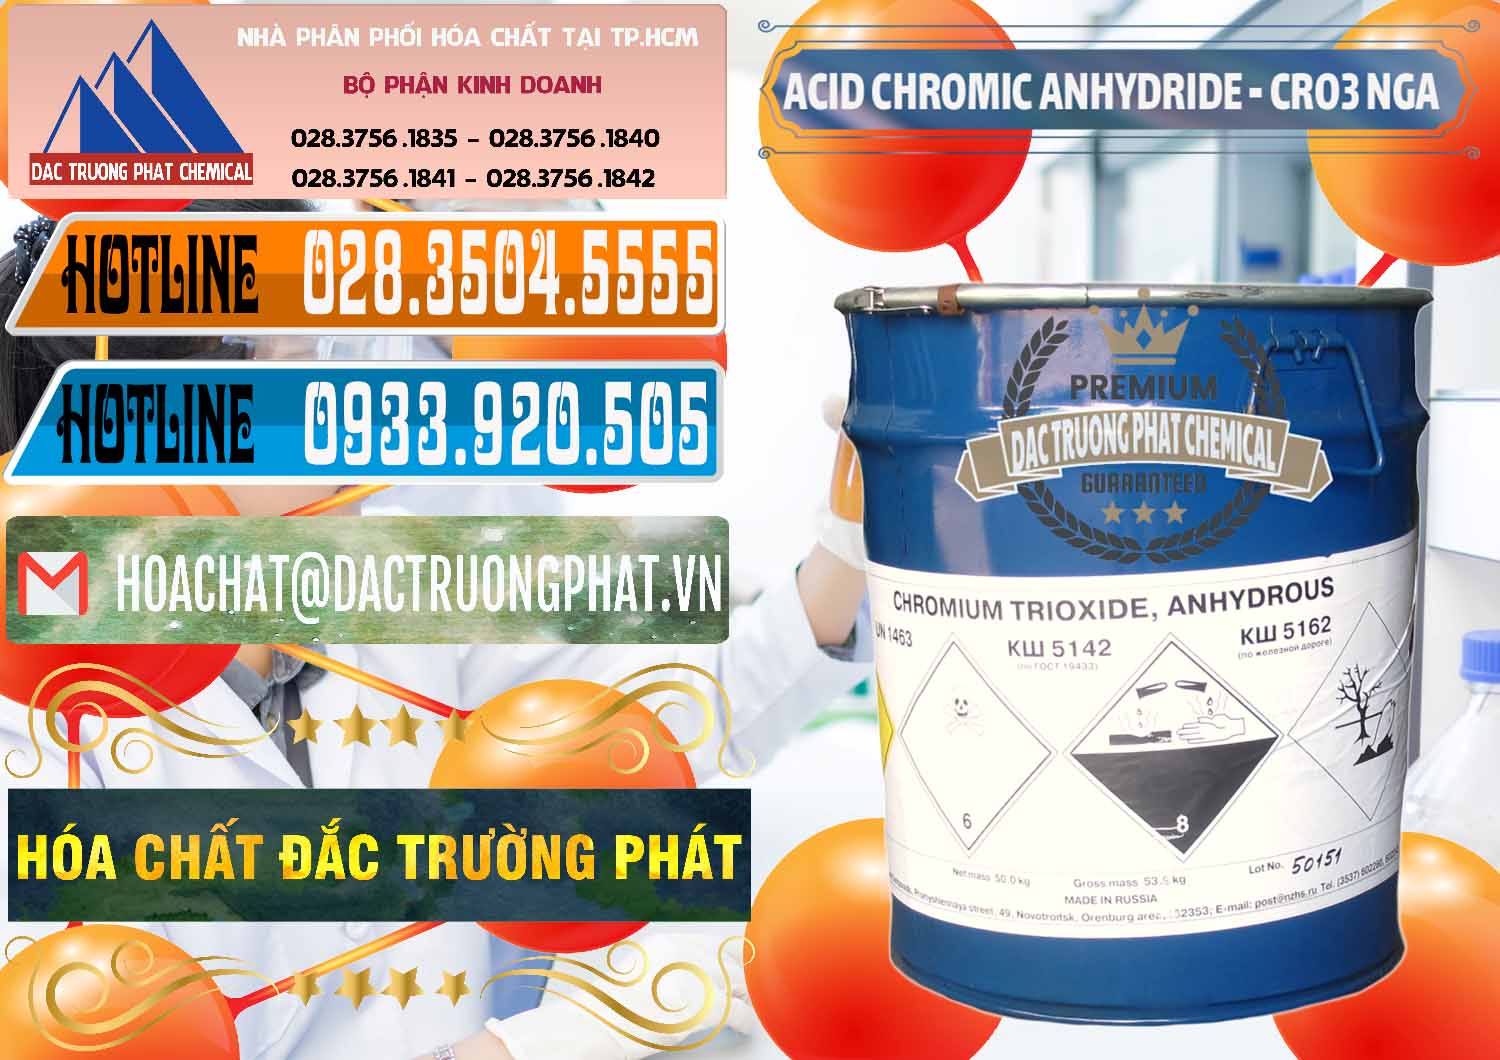 Đơn vị bán và phân phối Acid Chromic Anhydride - Cromic CRO3 Nga Russia - 0006 - Nơi cung cấp & phân phối hóa chất tại TP.HCM - stmp.net